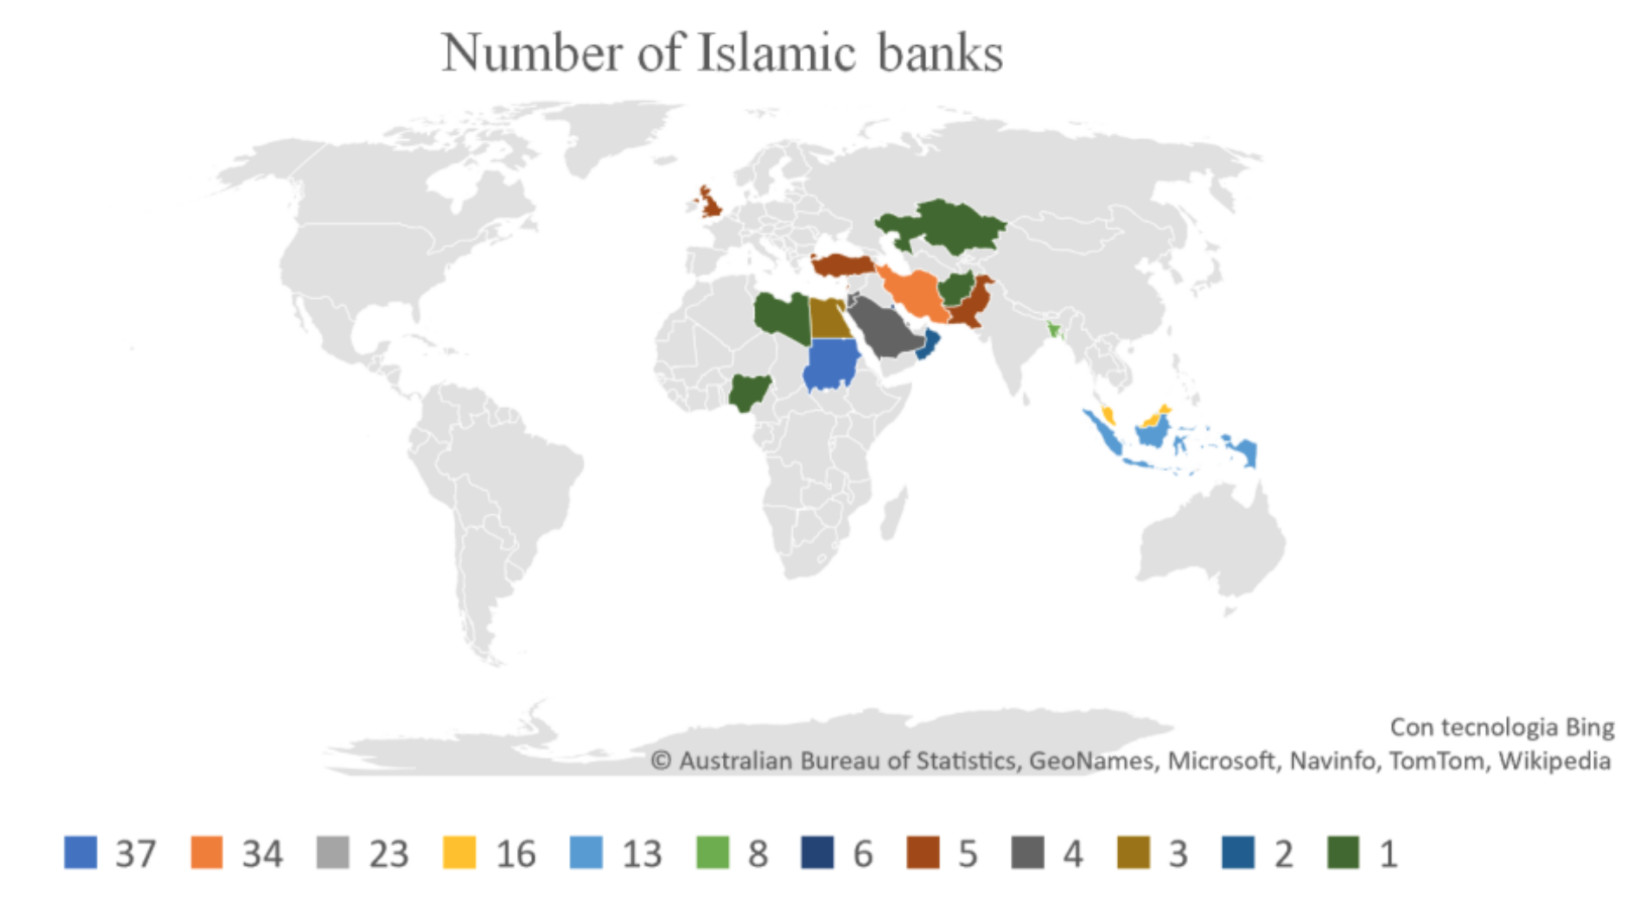 Diffusione degli istituti bancari islamici nel mondo.
Fonte: rielaborazione propria sui dati forniti da Islamic Financial Service Board (Q2 2018).